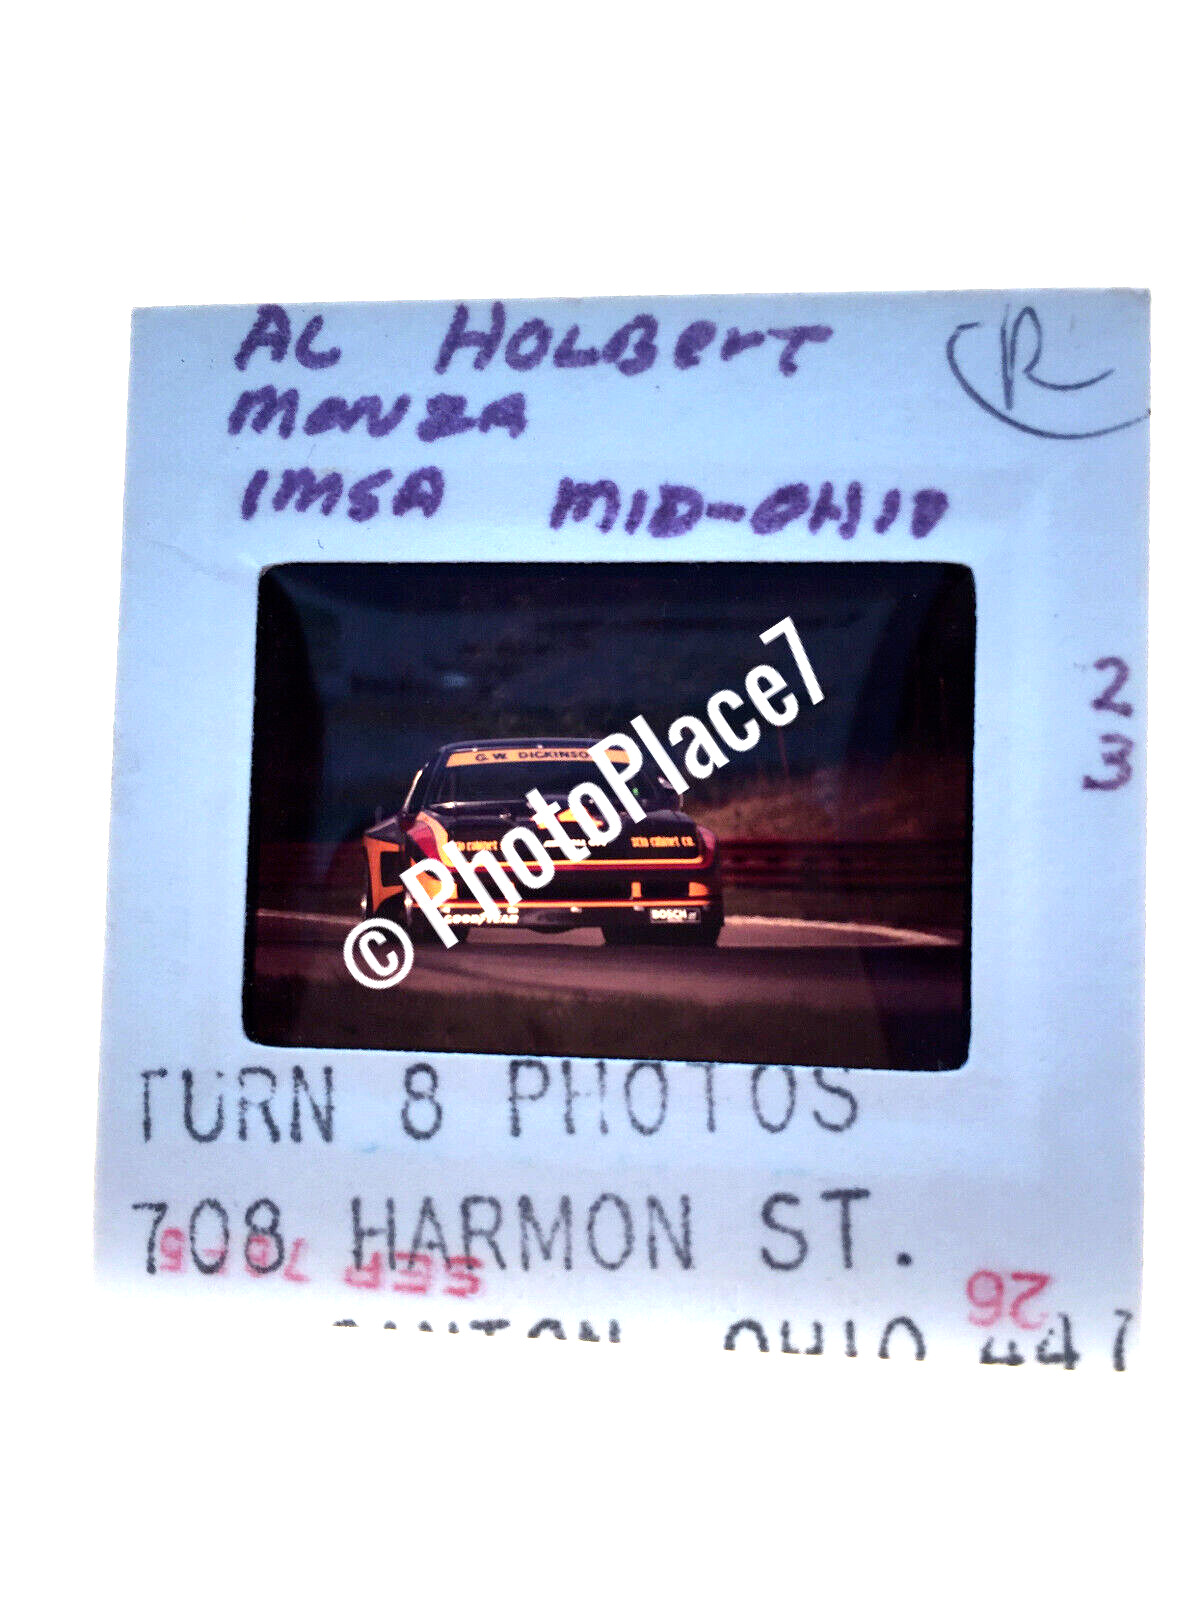 Vintage Racing Original 35mm Slide Holbert/Monza Imsa Mid-Ohio P4#14